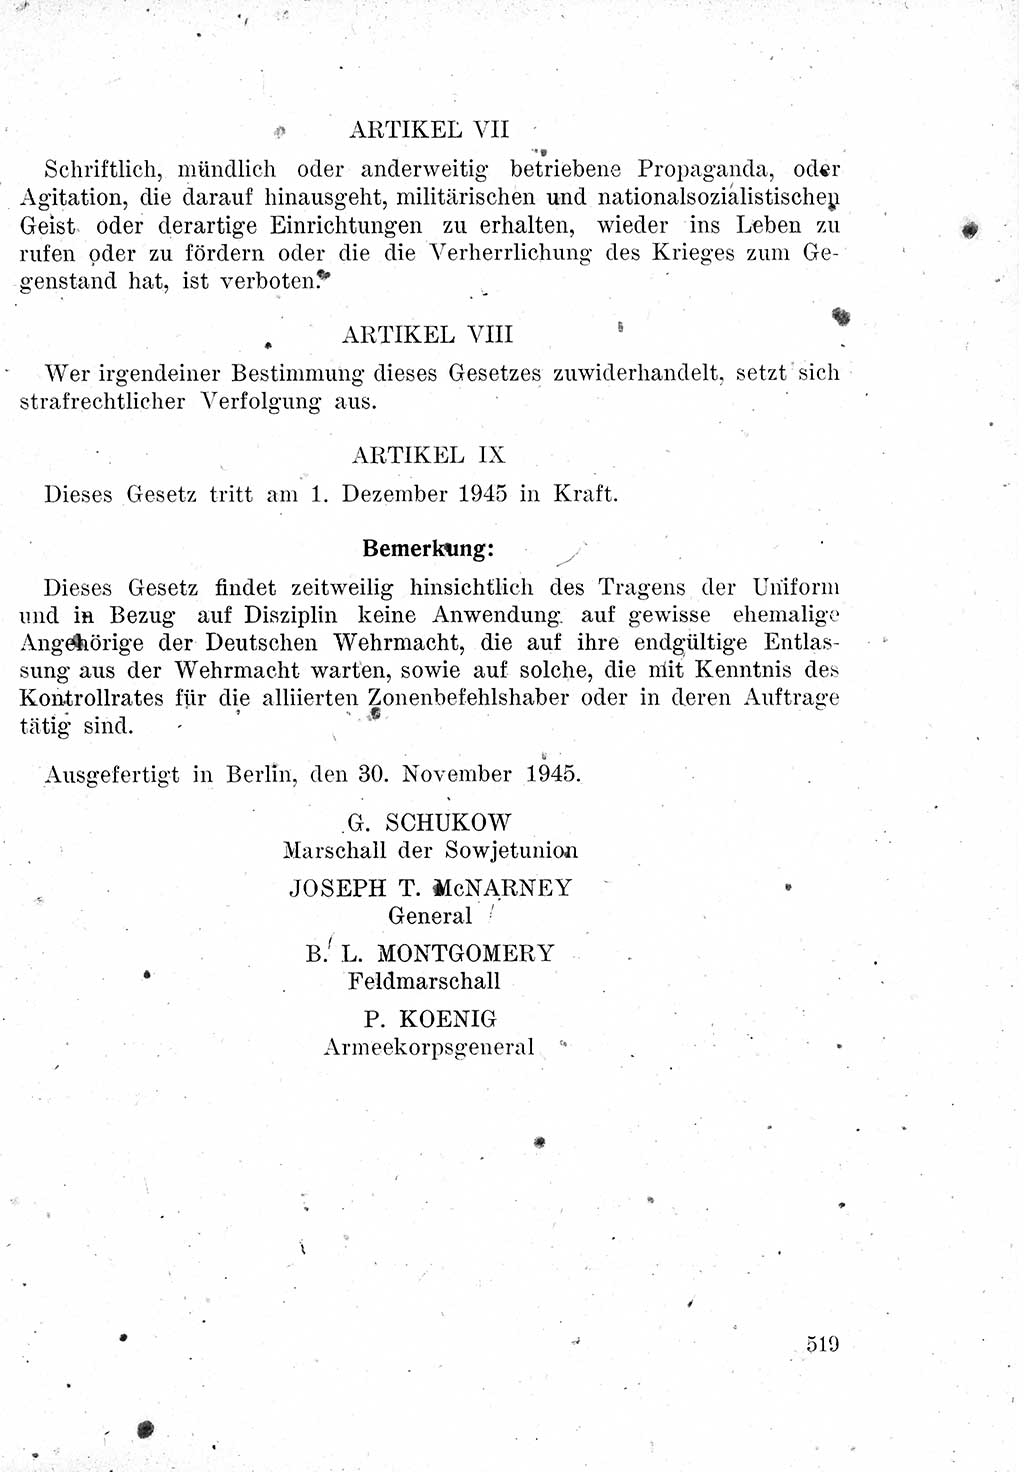 Das Recht der Besatzungsmacht (Deutschland), Proklamationen, Deklerationen, Verordnungen, Gesetze und Bekanntmachungen 1947, Seite 519 (R. Bes. Dtl. 1947, S. 519)